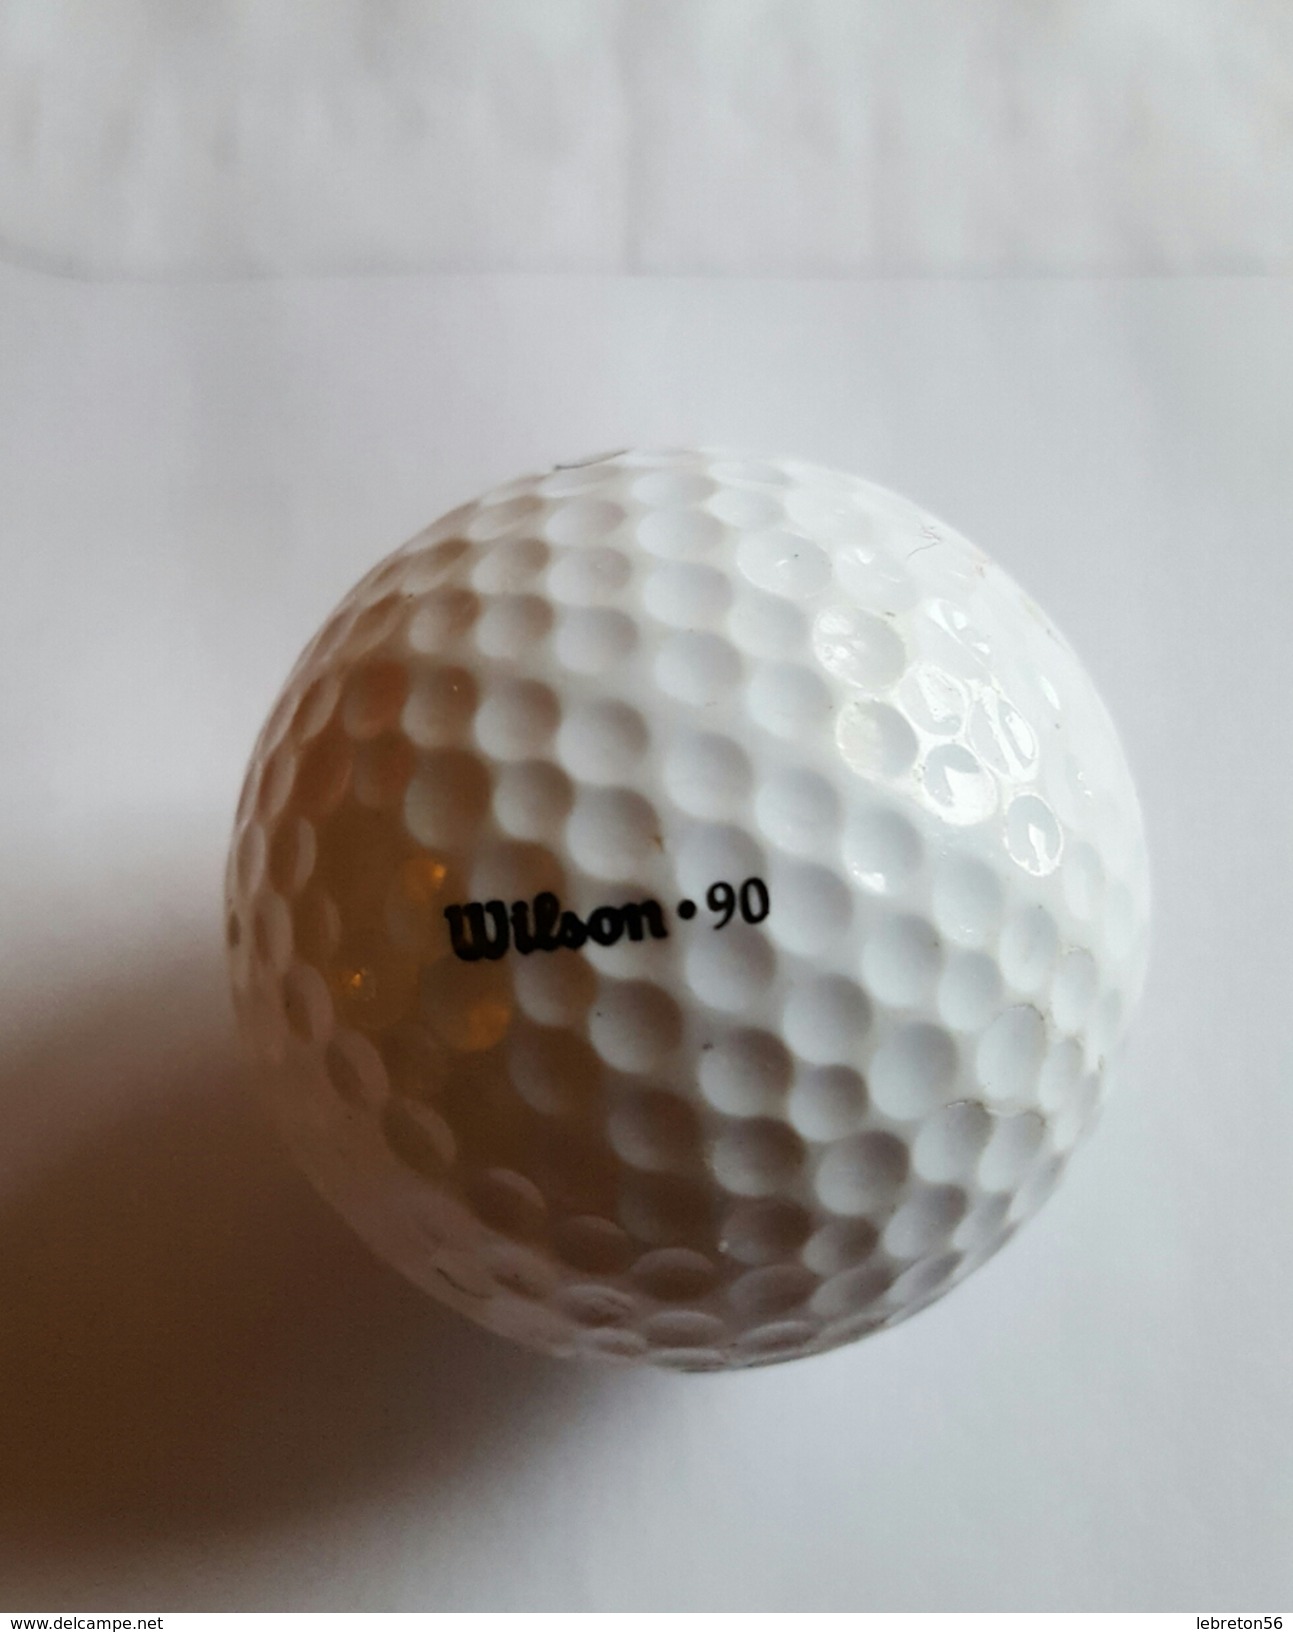 Joli 1 Balle De Golf Collection ULTRA 3 Wilson.90 - Kleding, Souvenirs & Andere